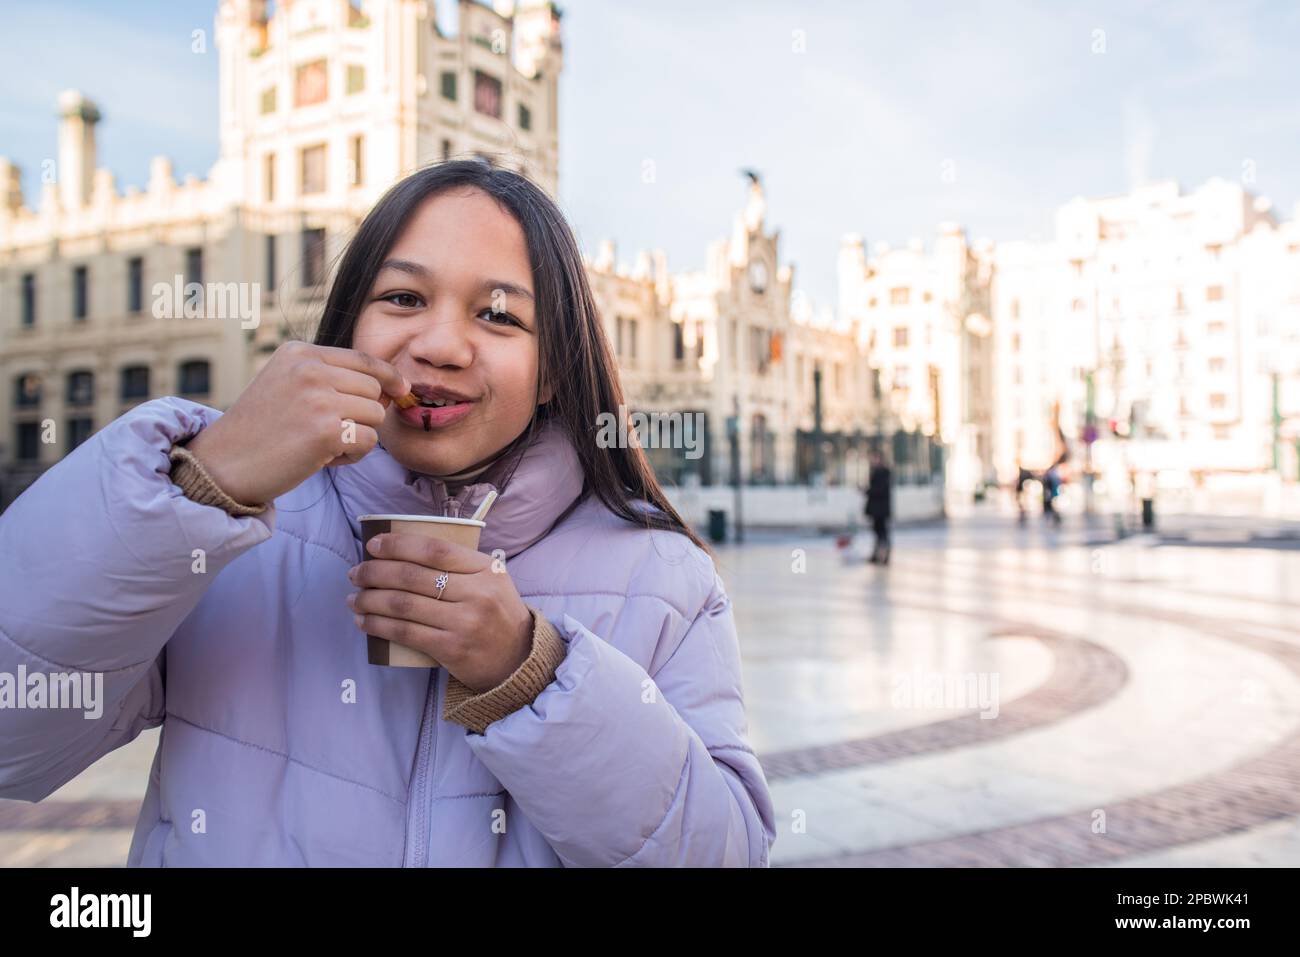 Une fille mangeant des churros tient une tasse de chocolat et regardant l'appareil photo. Banque D'Images